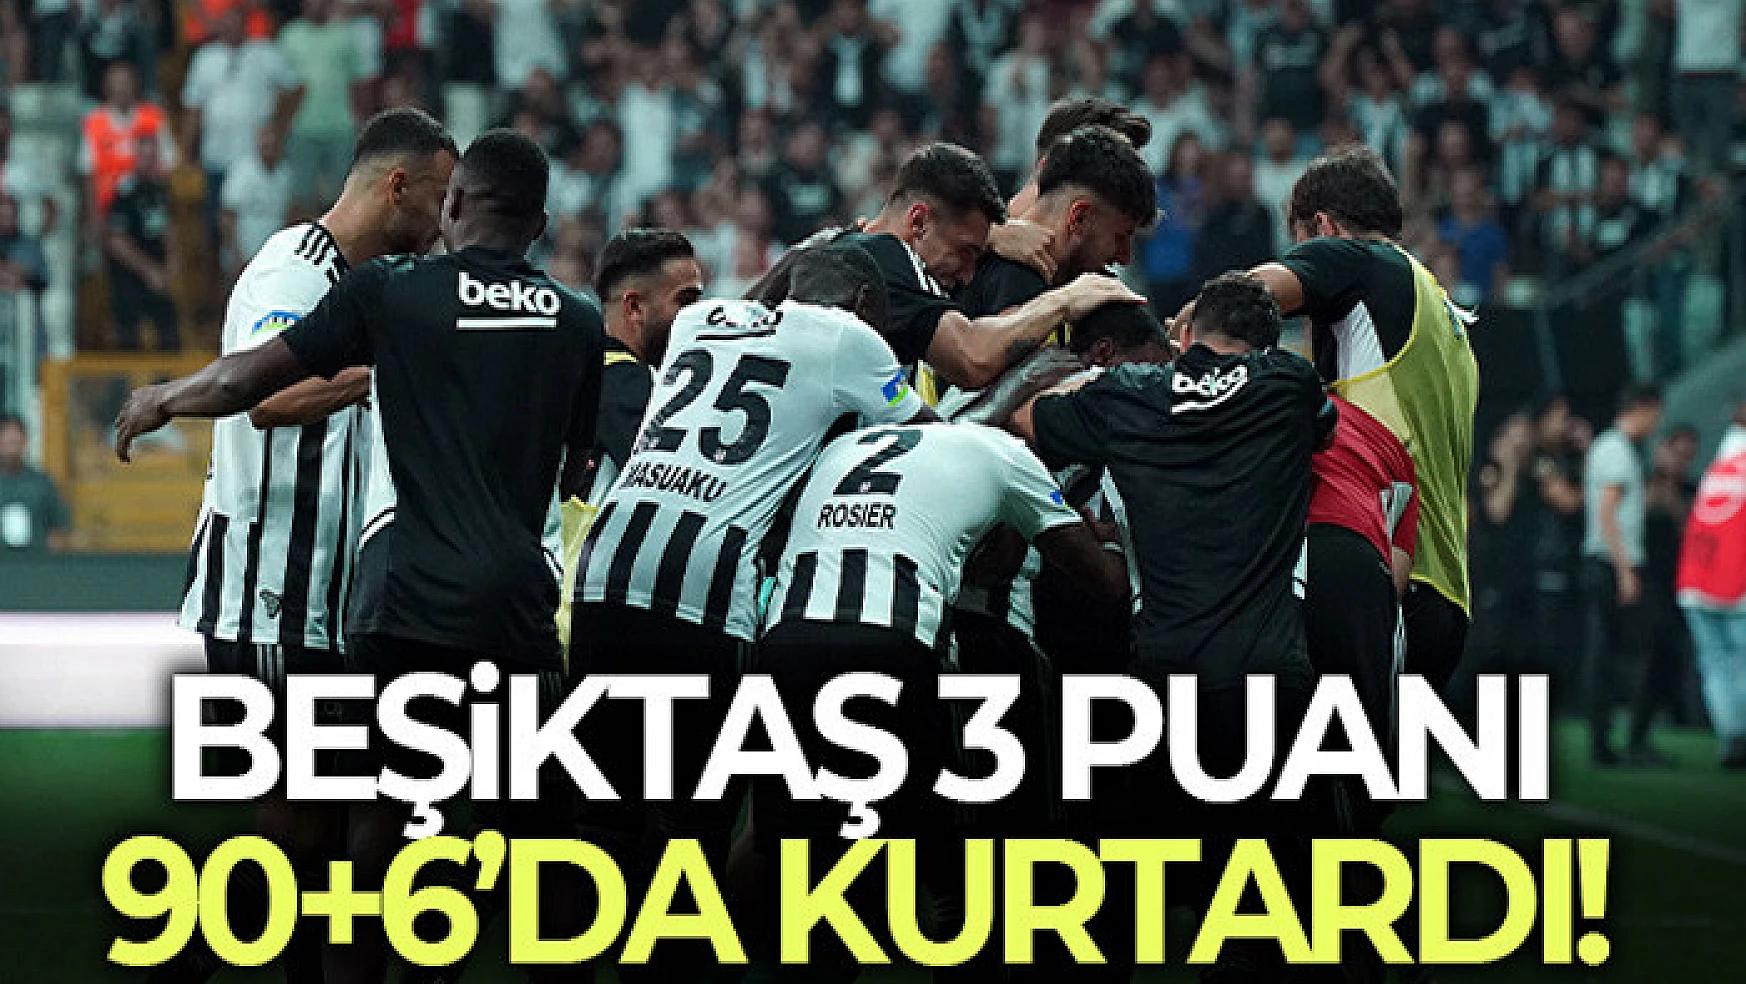 Beşiktaş 3 puanı 90+6'da kurtardı